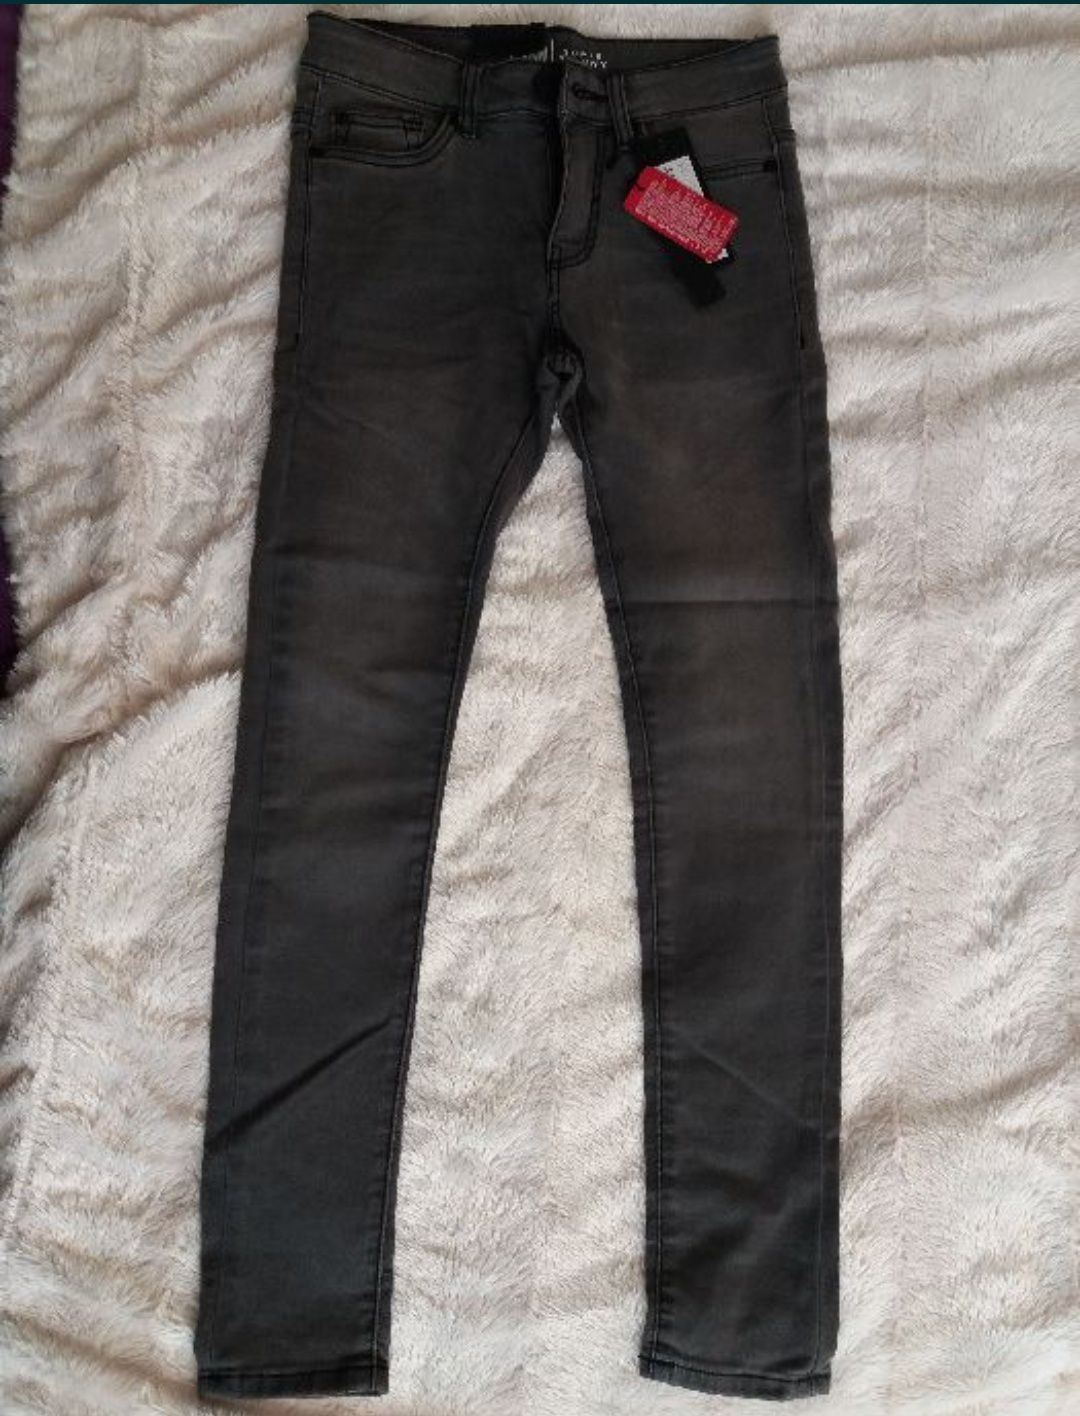 Spodnie męskie jeans jeansowe 27/30 nowe z metkami